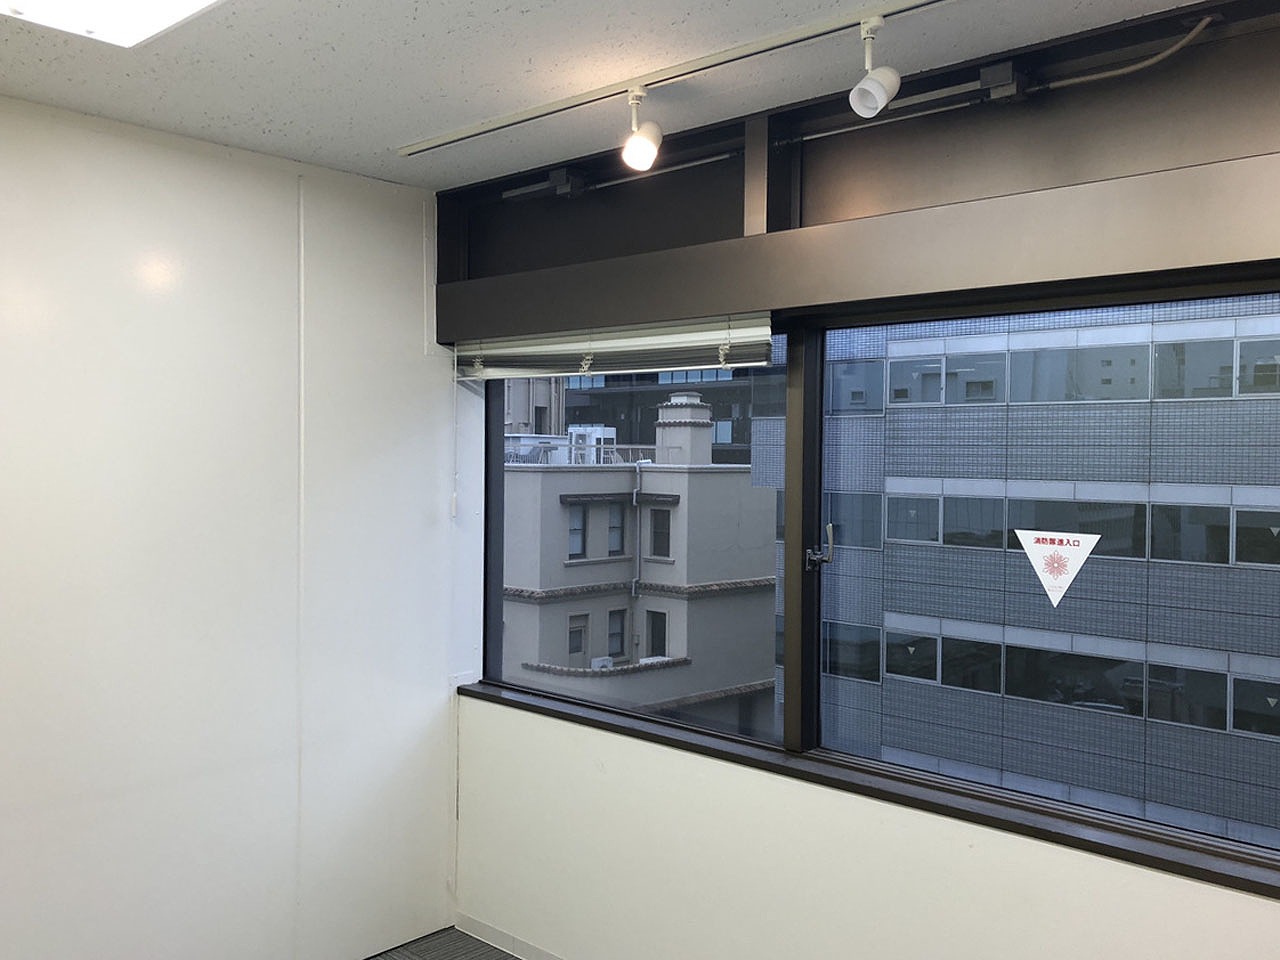 【居抜き】大阪市中央区北浜エリアの1フロア1テナント、区画の多い居抜きオフィス